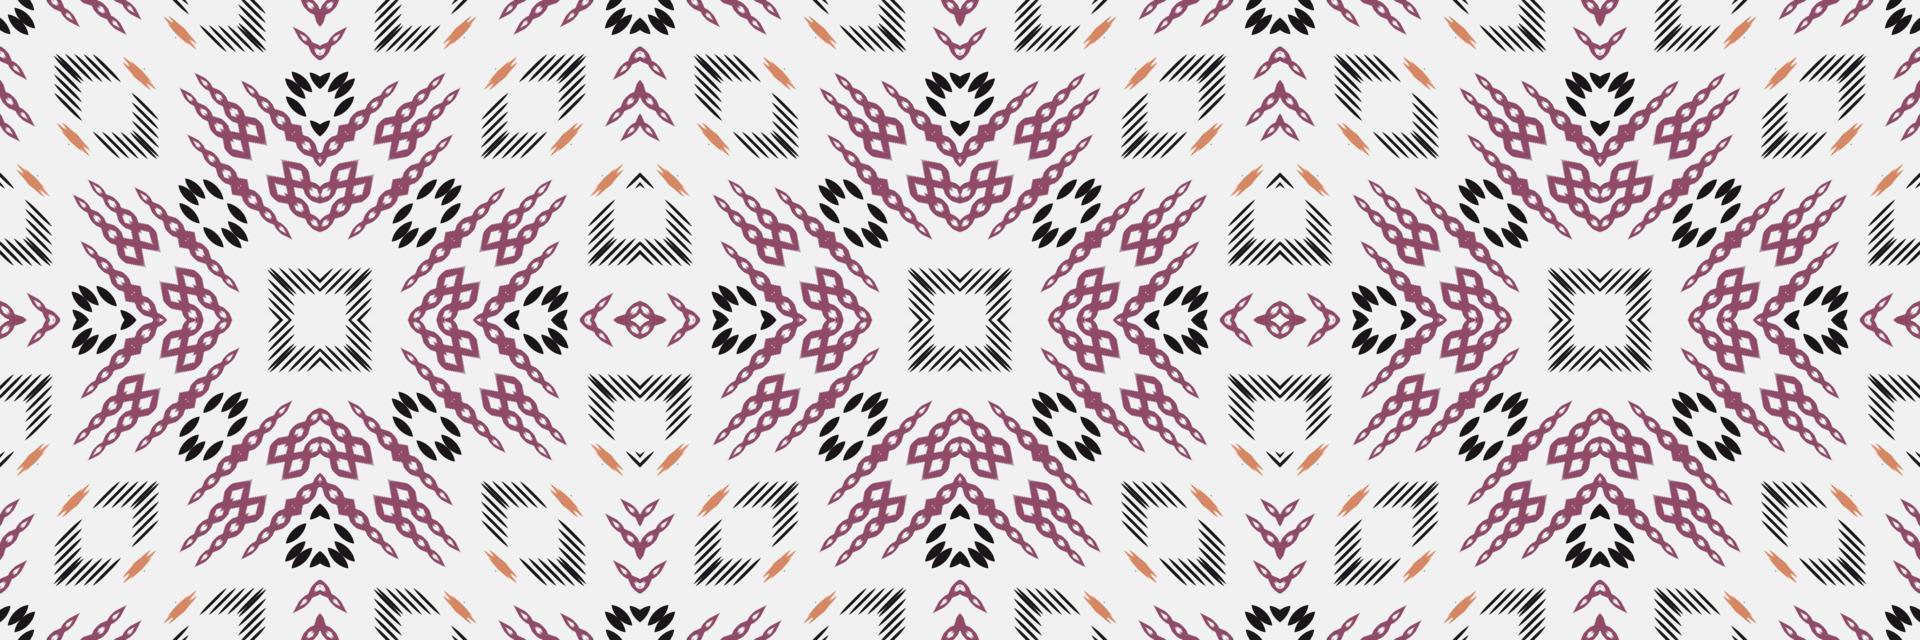 motivo textil batik ikat flor patrón sin costuras diseño vectorial digital para imprimir saree kurti borde de tela símbolos de pincel muestras ropa de fiesta vector